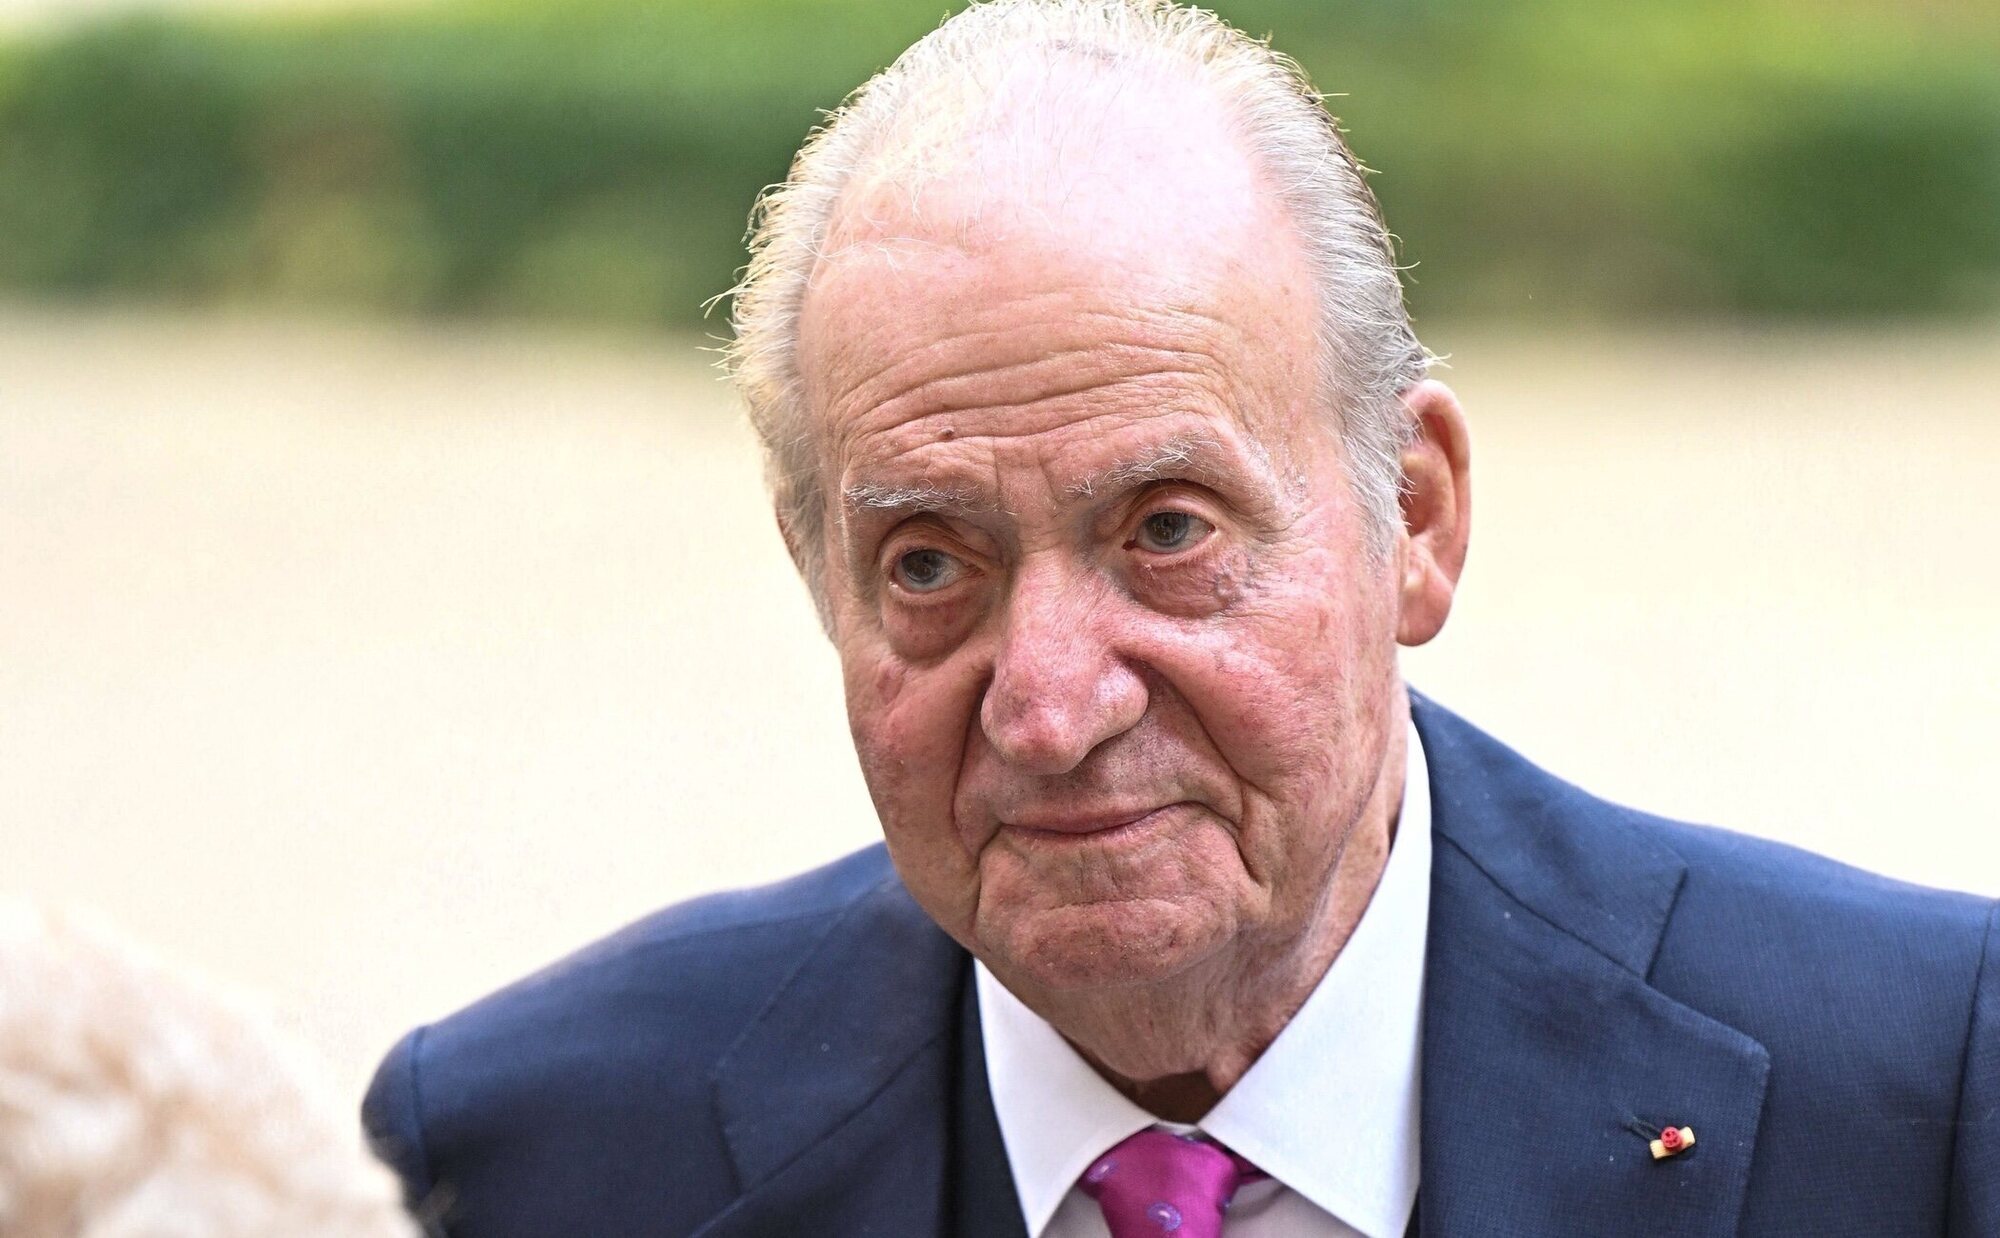 El Rey Juan Carlos gana a Corinna Larsen y la demanda por acoso es archivada por la Corte británica